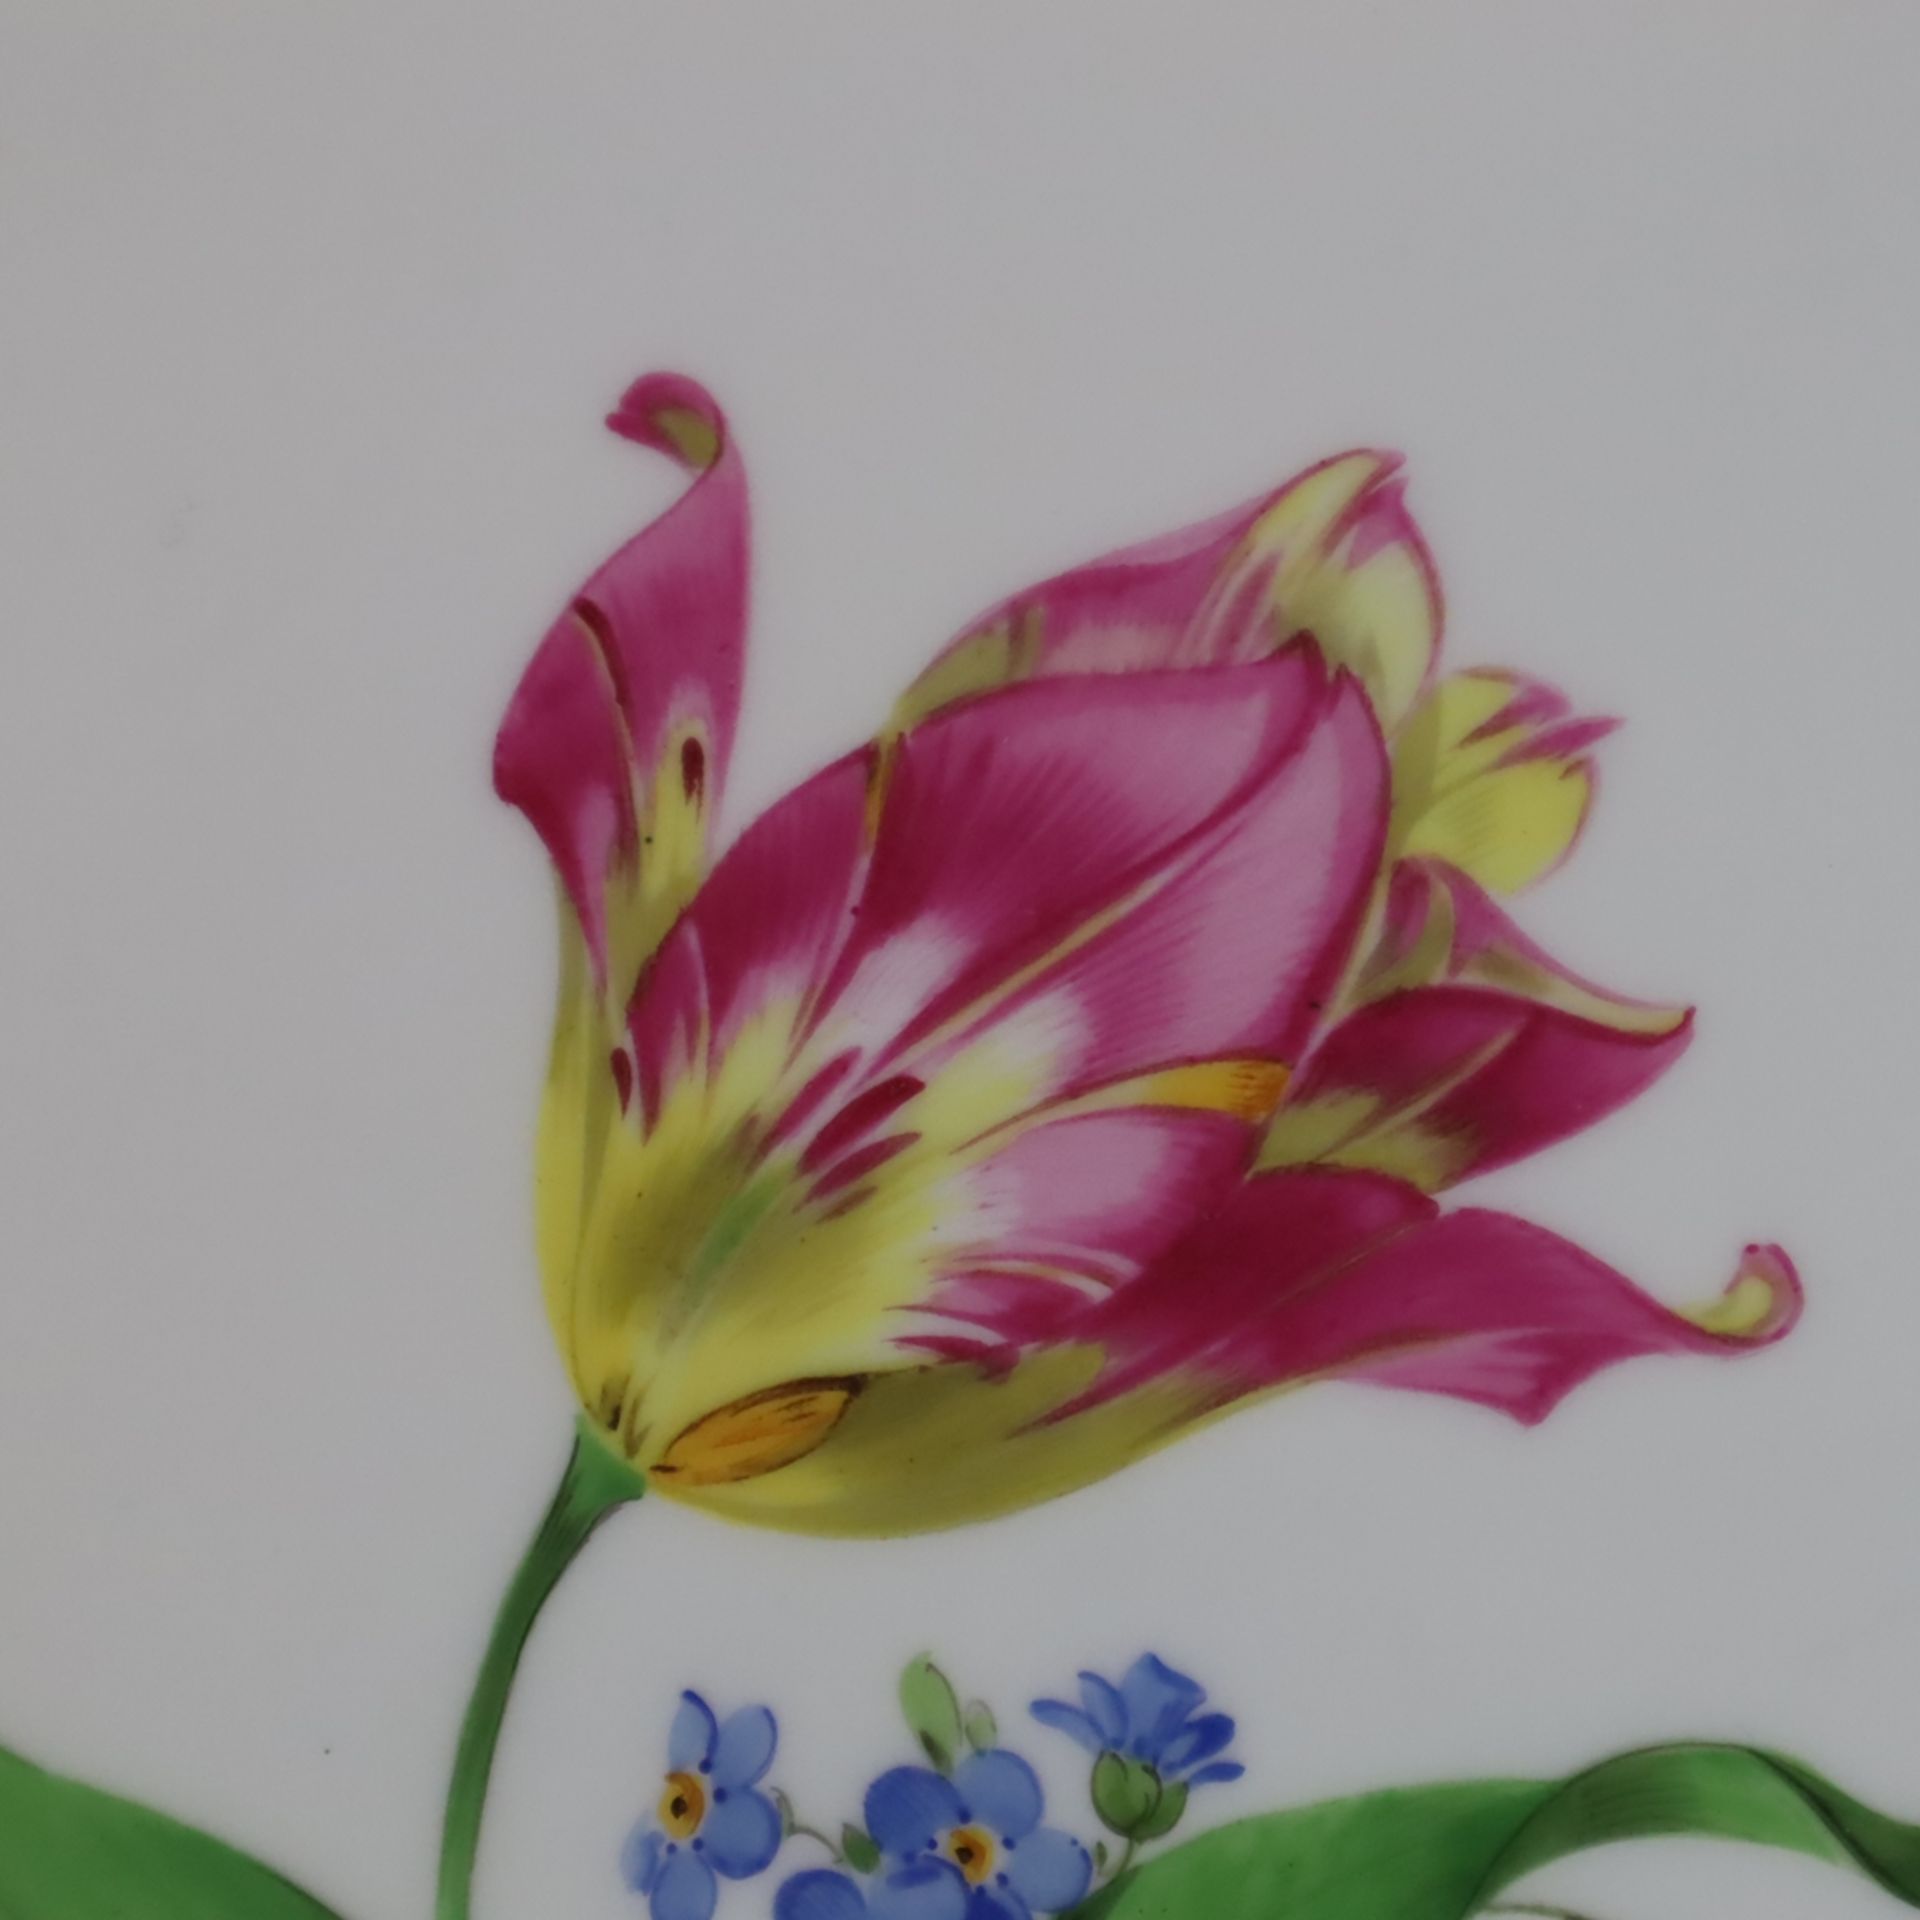 Tortenplatte - Meissen, 20. Jh., Porzellan, polychrome Feld- und Streublumenmalerei, Goldstaffage,  - Bild 3 aus 9